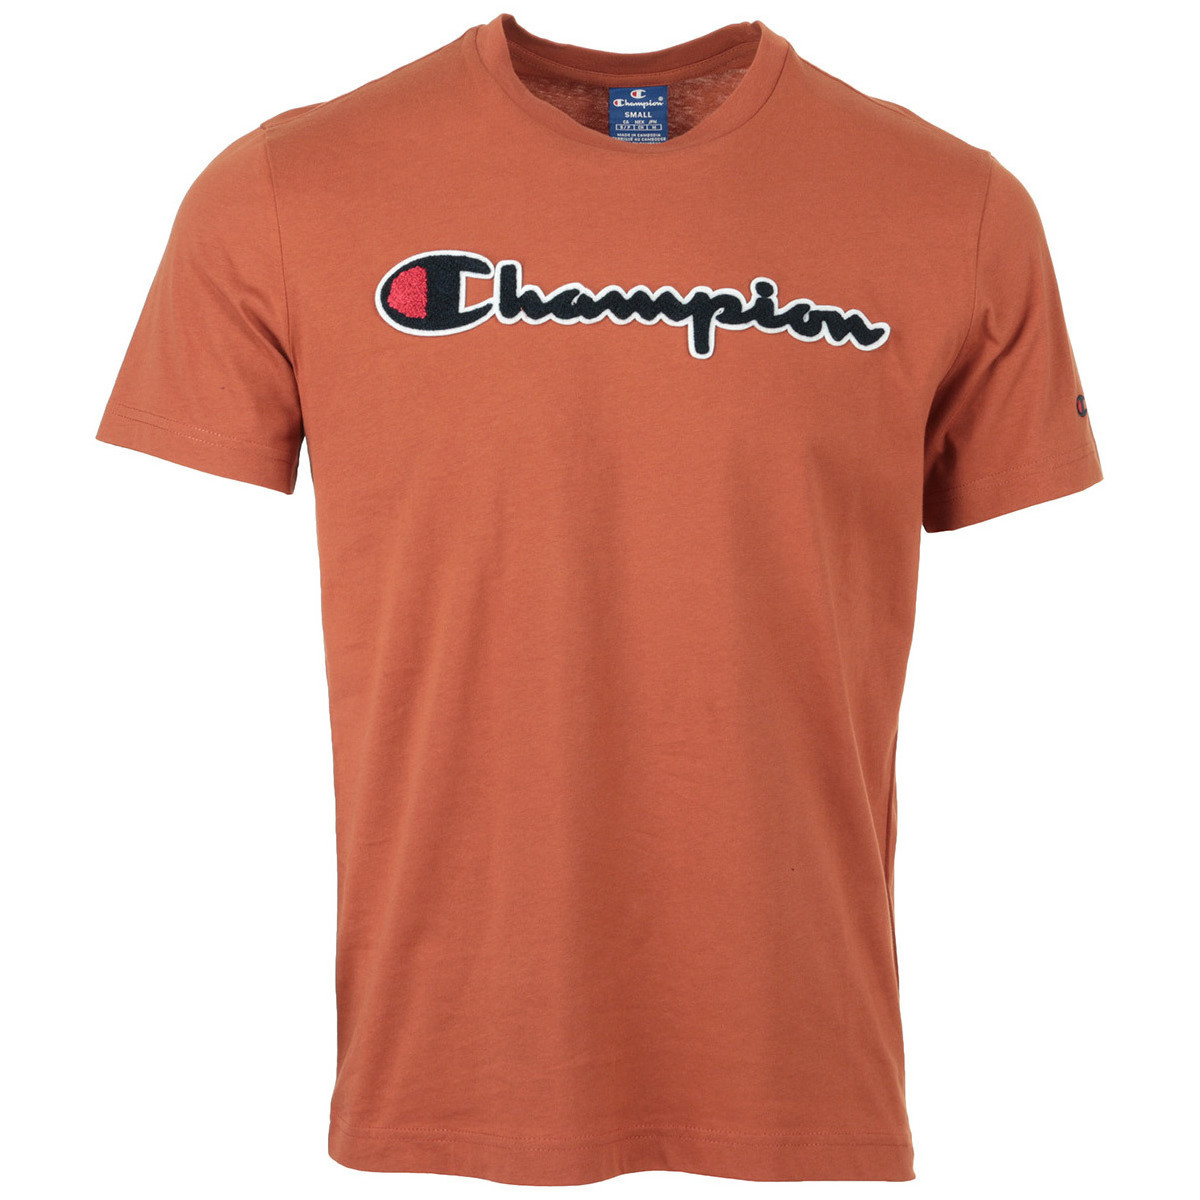 Textil Muži Trička s krátkým rukávem Champion Crewneck T-Shirt Oranžová